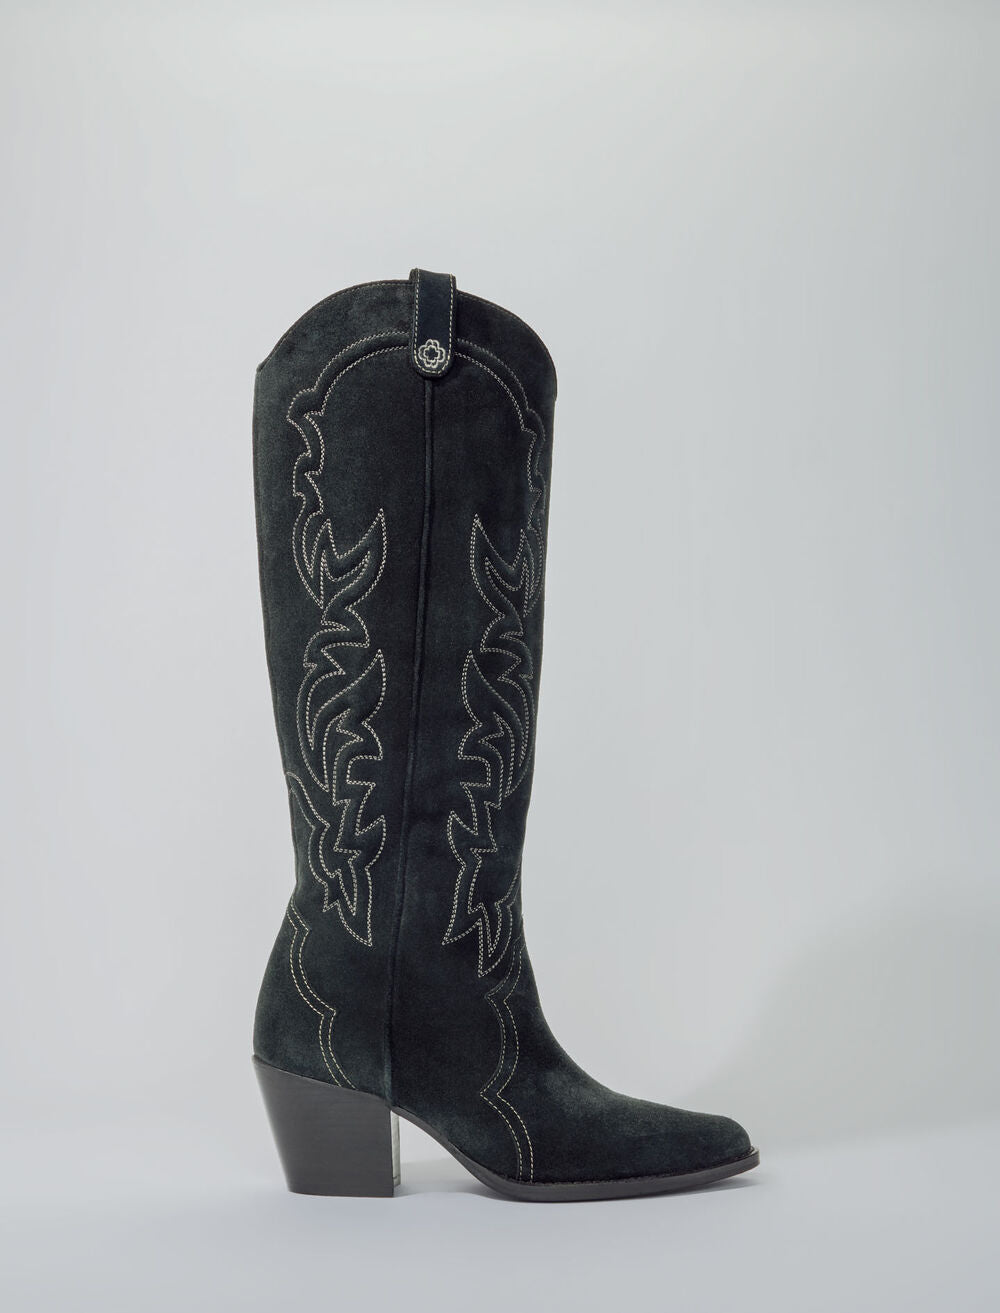 High-leg cowboy boots